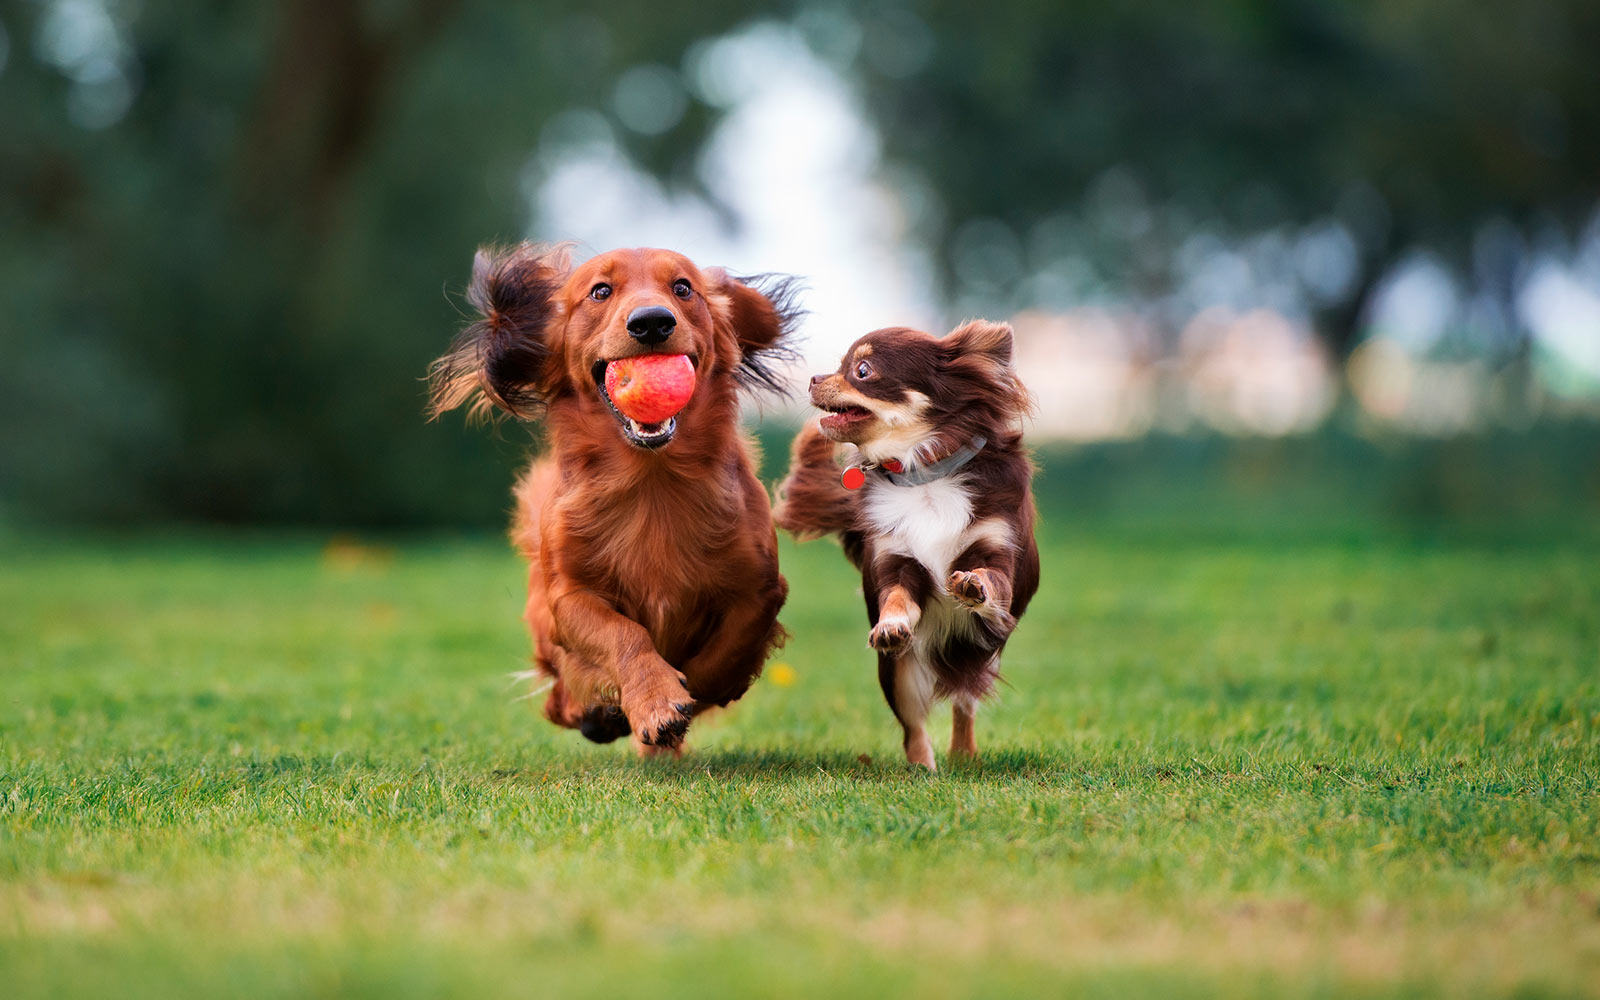 Juguetes para perros: 5 ideas para divertirte con tu perro en casa